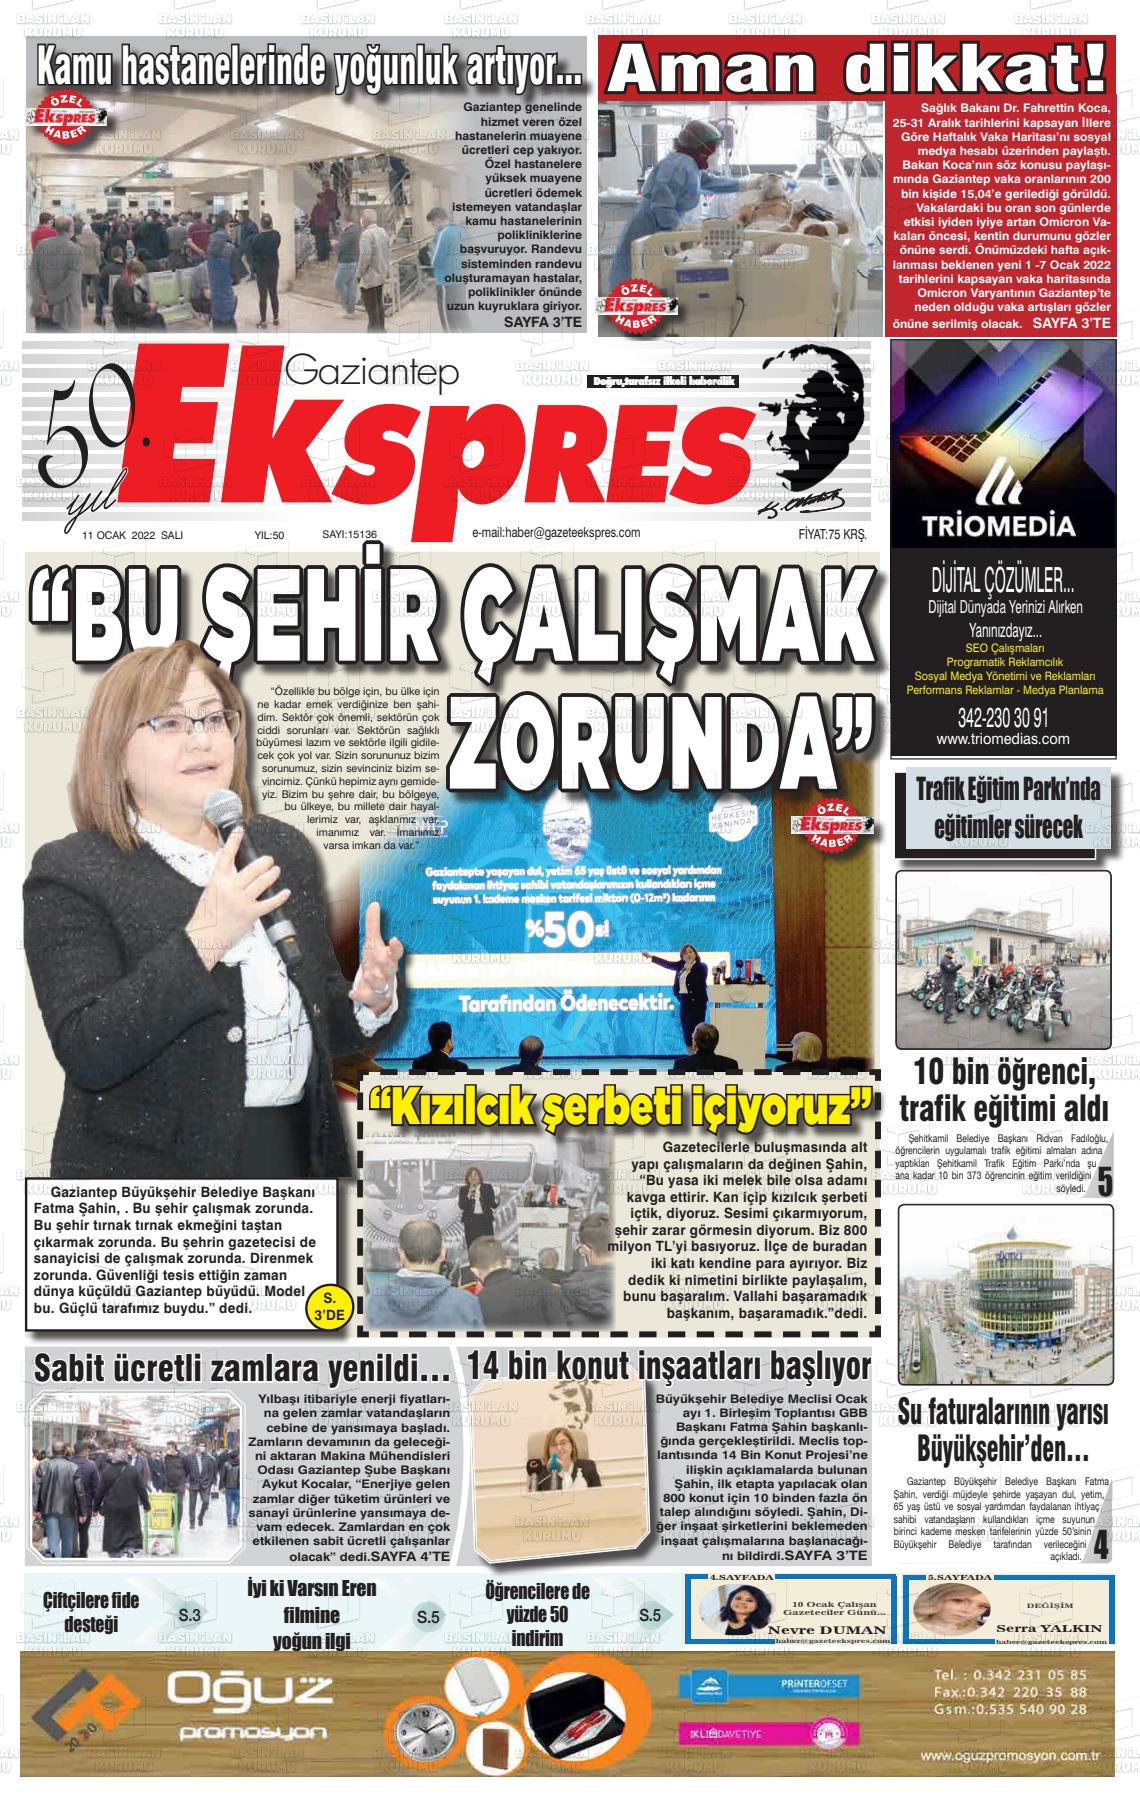 Ocak Tarihli Gaziantep Ekspres Gazete Man Etleri